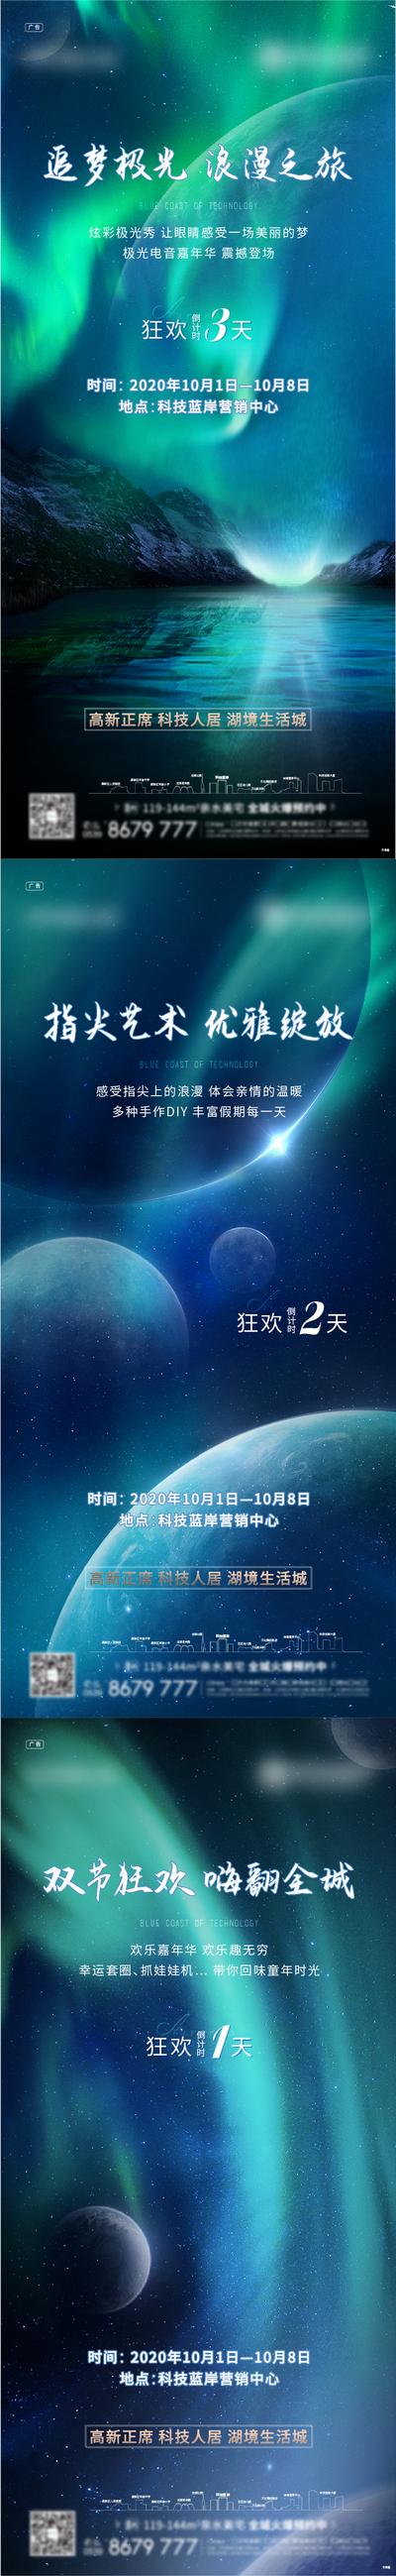 南门网 广告 海报 地产 倒计时 星空 宇宙 梦幻 未来 唯美